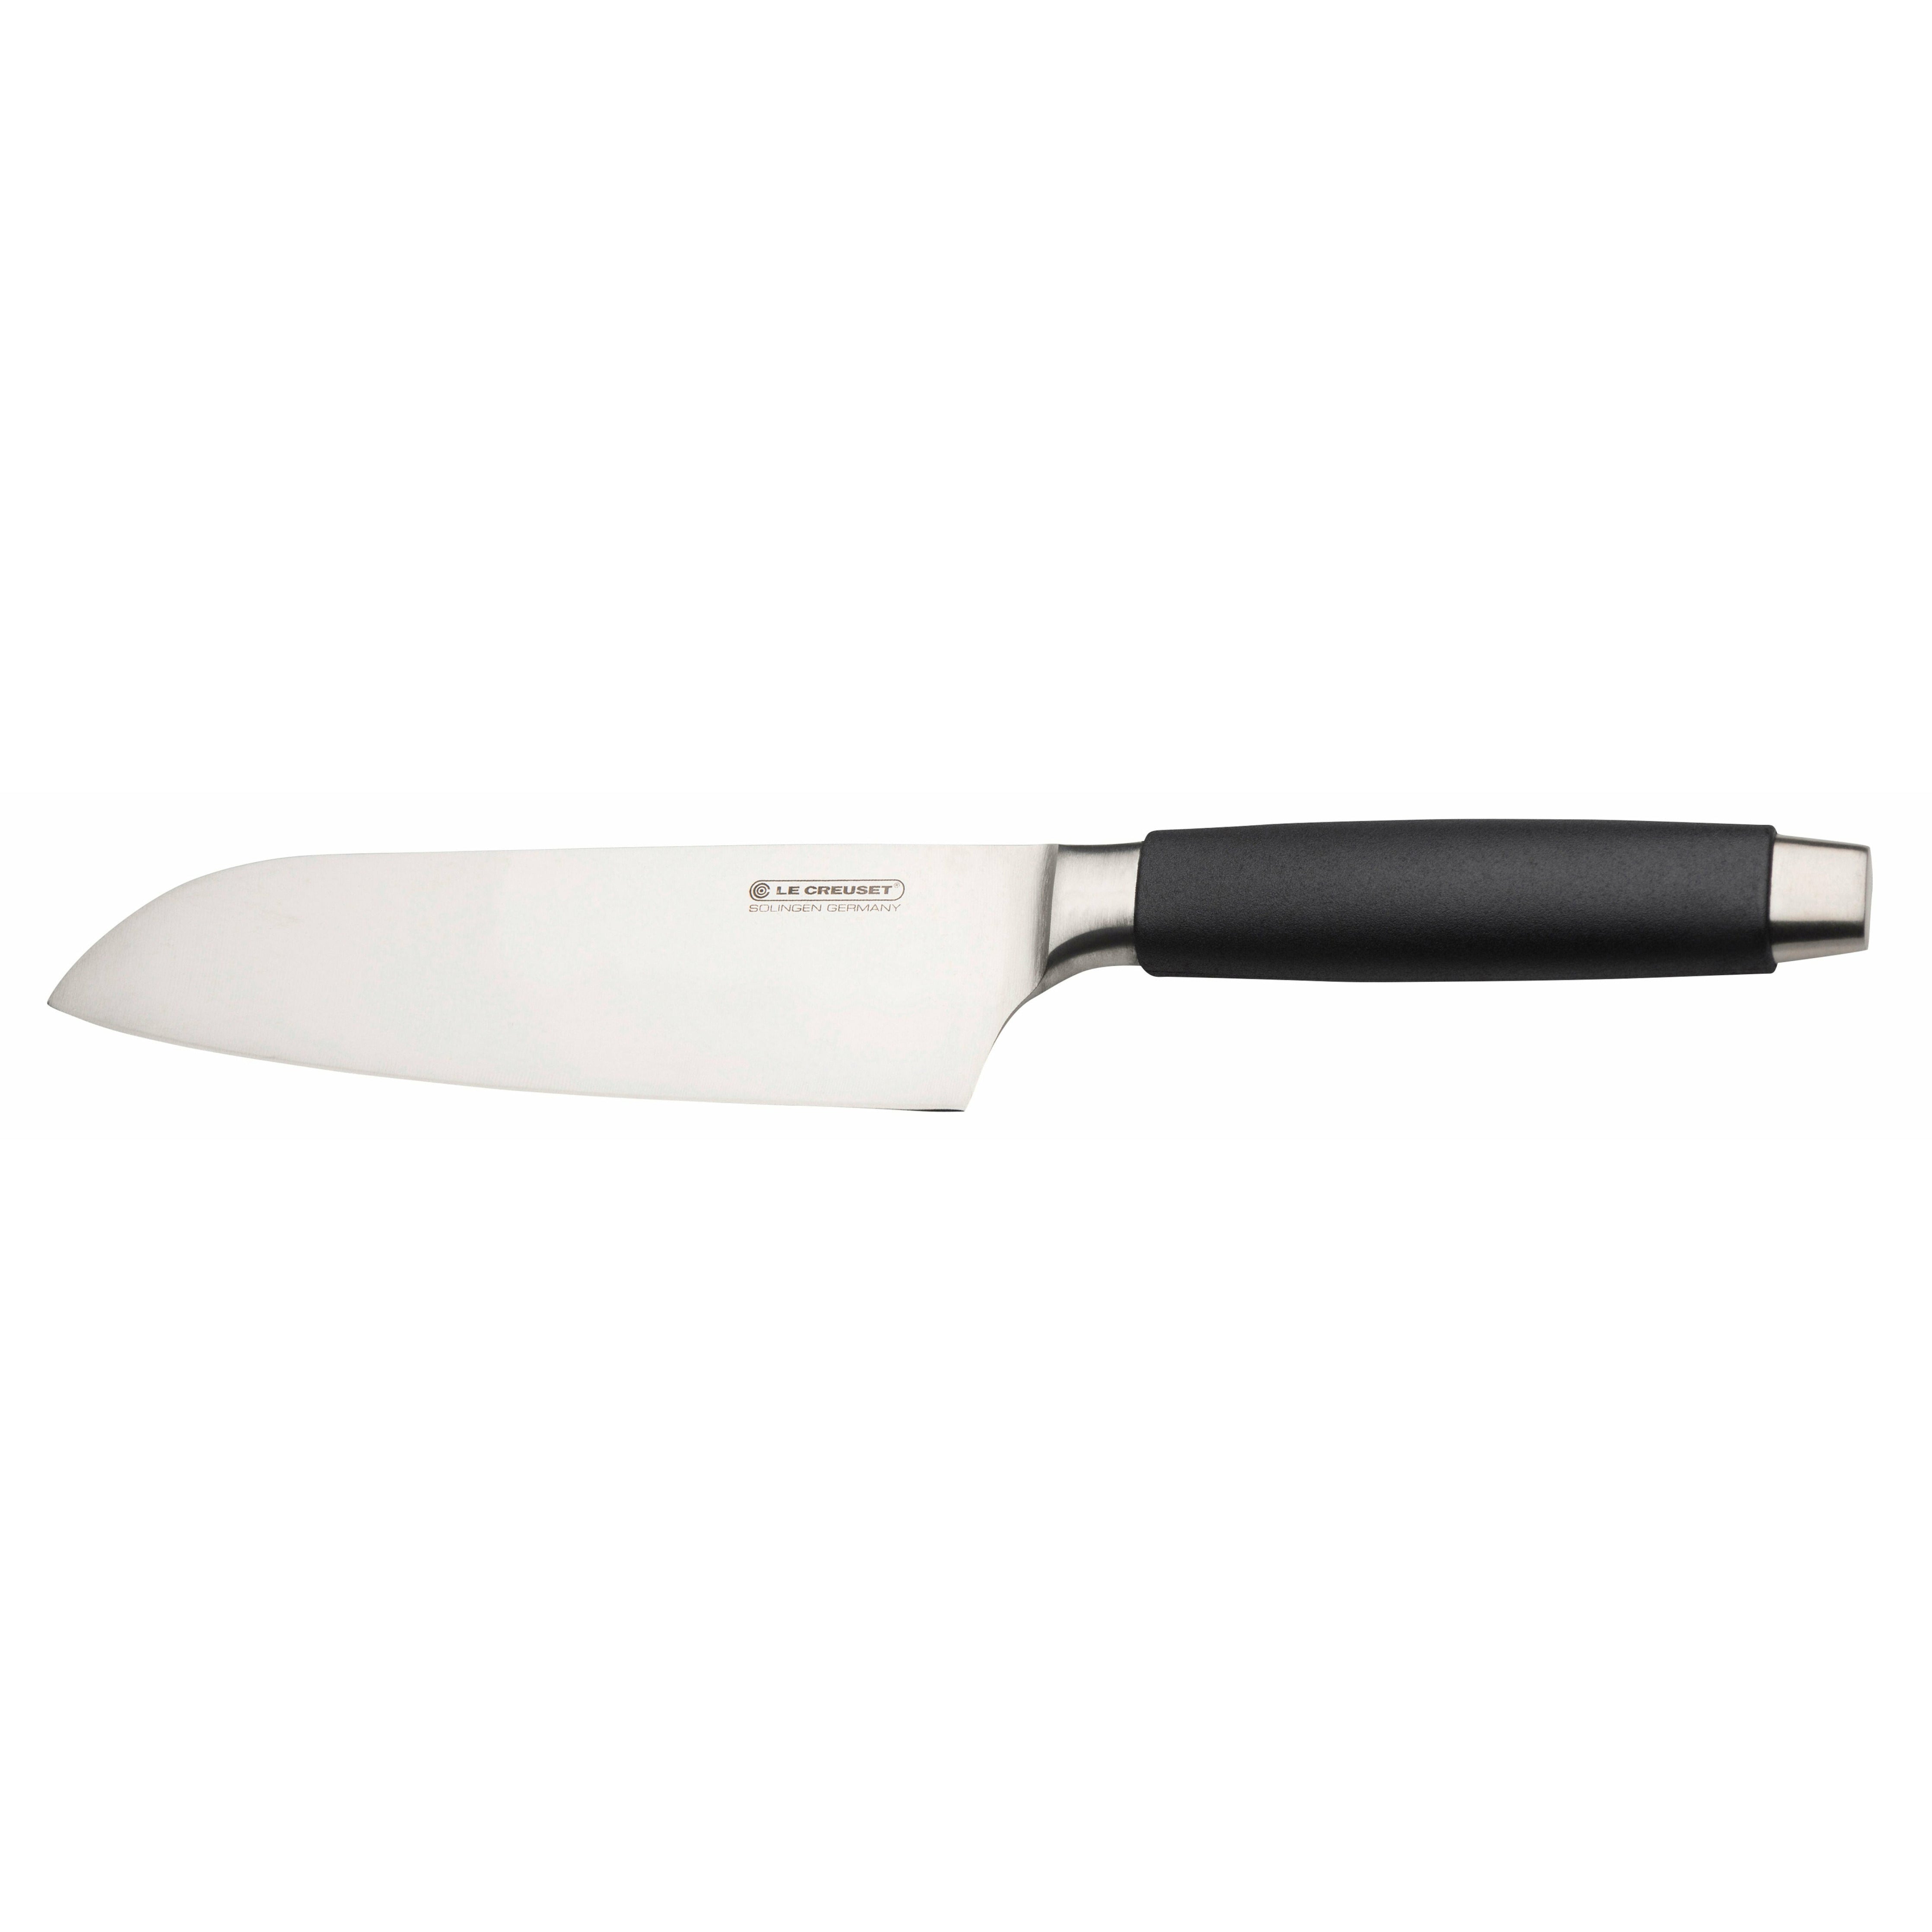 Le Creuset Santoku Nůž Standard s černou rukojetí, 18 cm